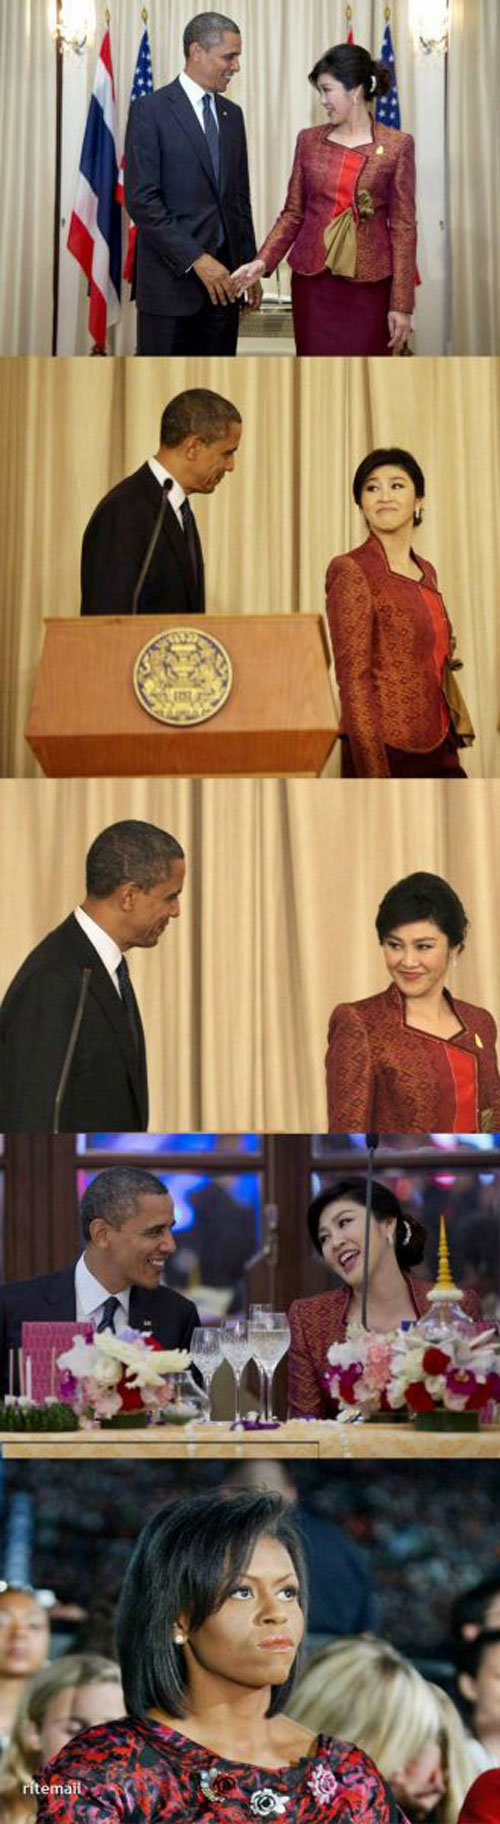 عکس باحال اوباما و عصبانیت خانم اش